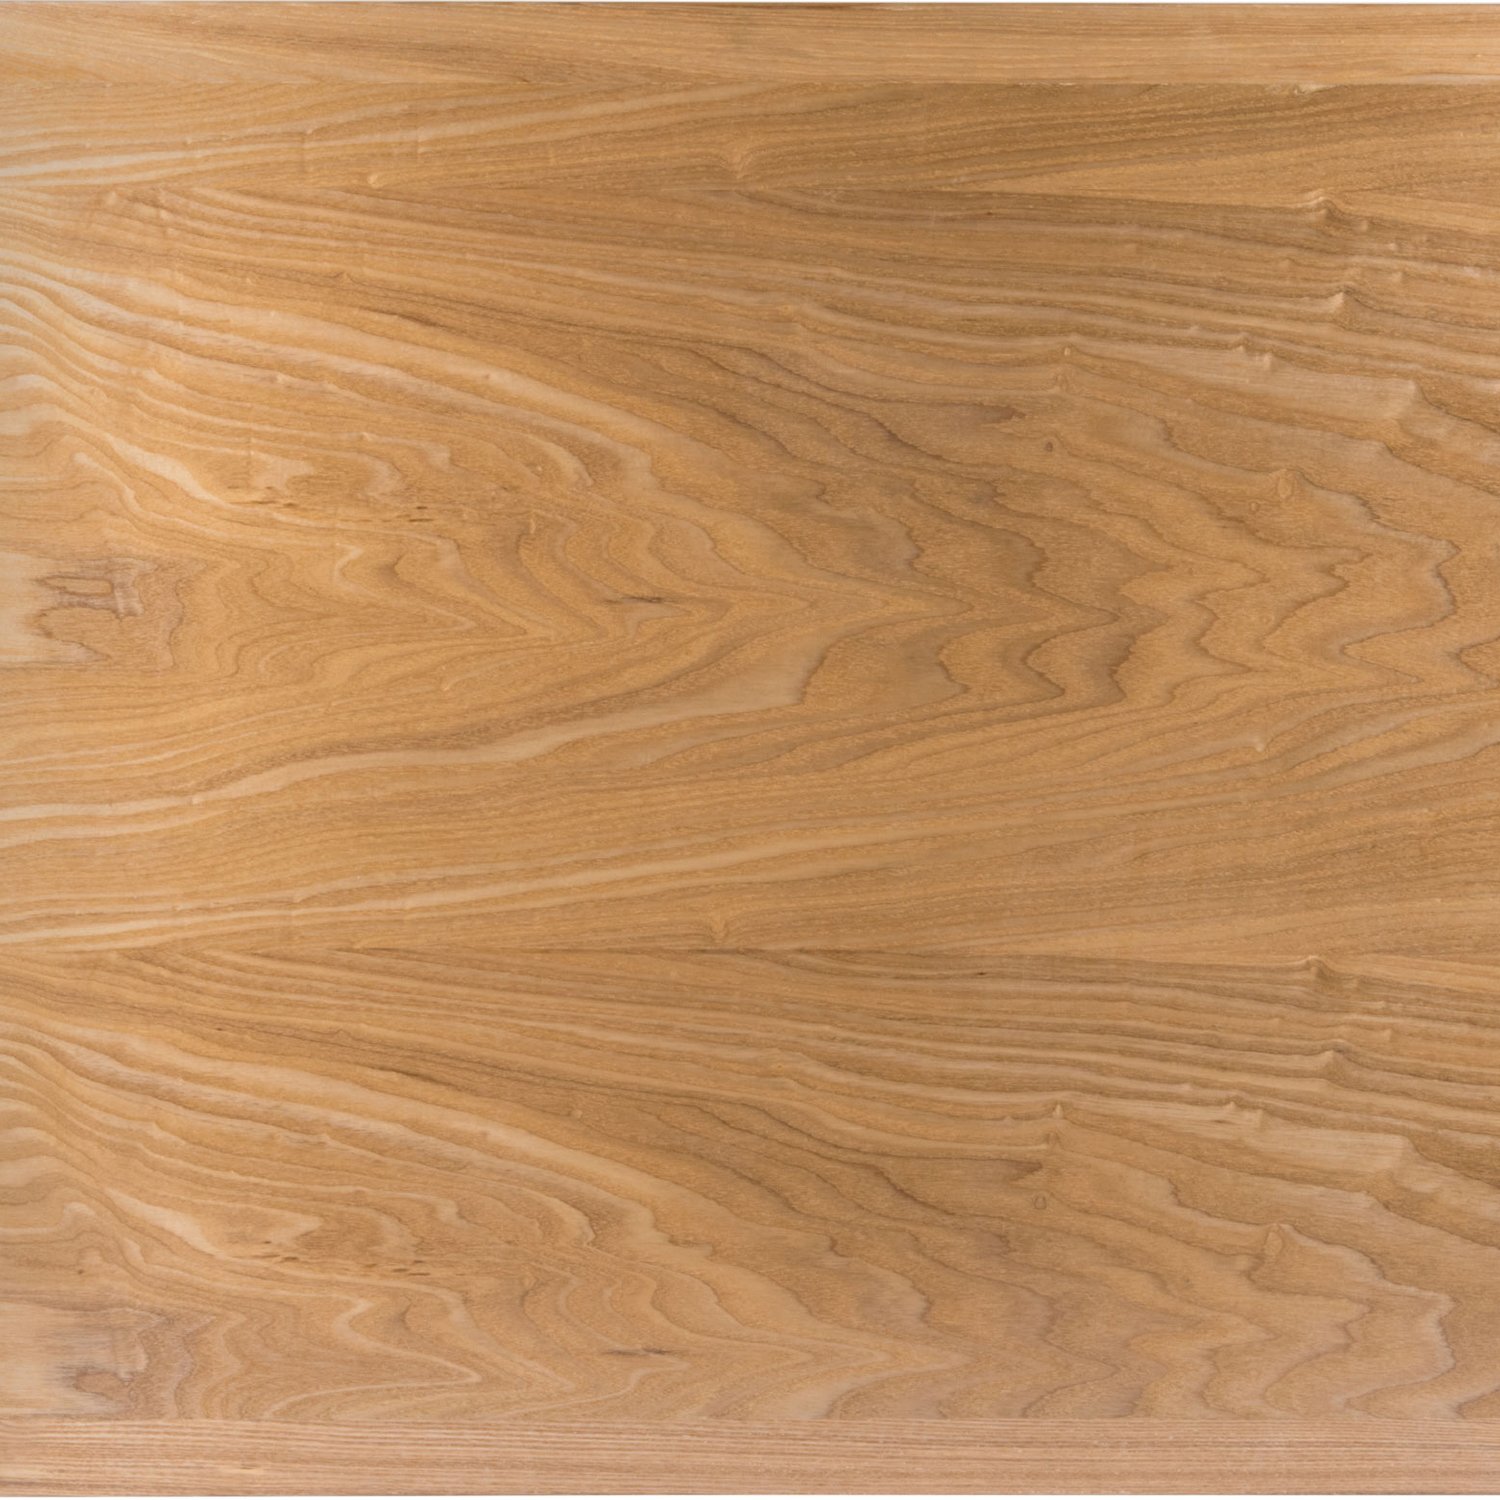 Light brown veneer wood table top